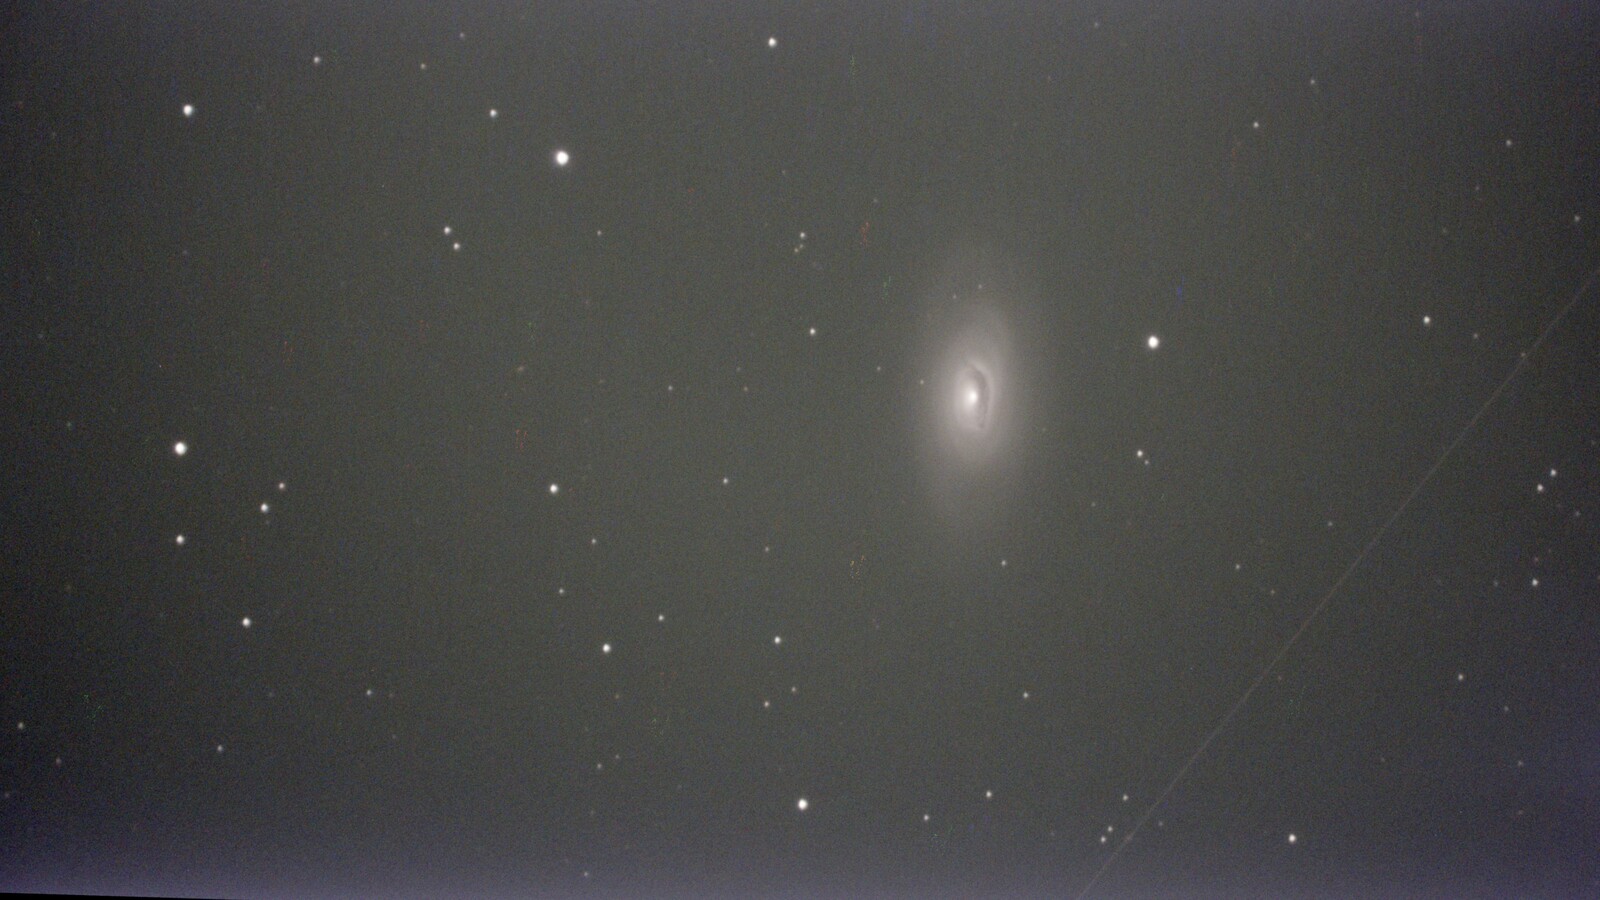 M64 – Black Eye Galaxy